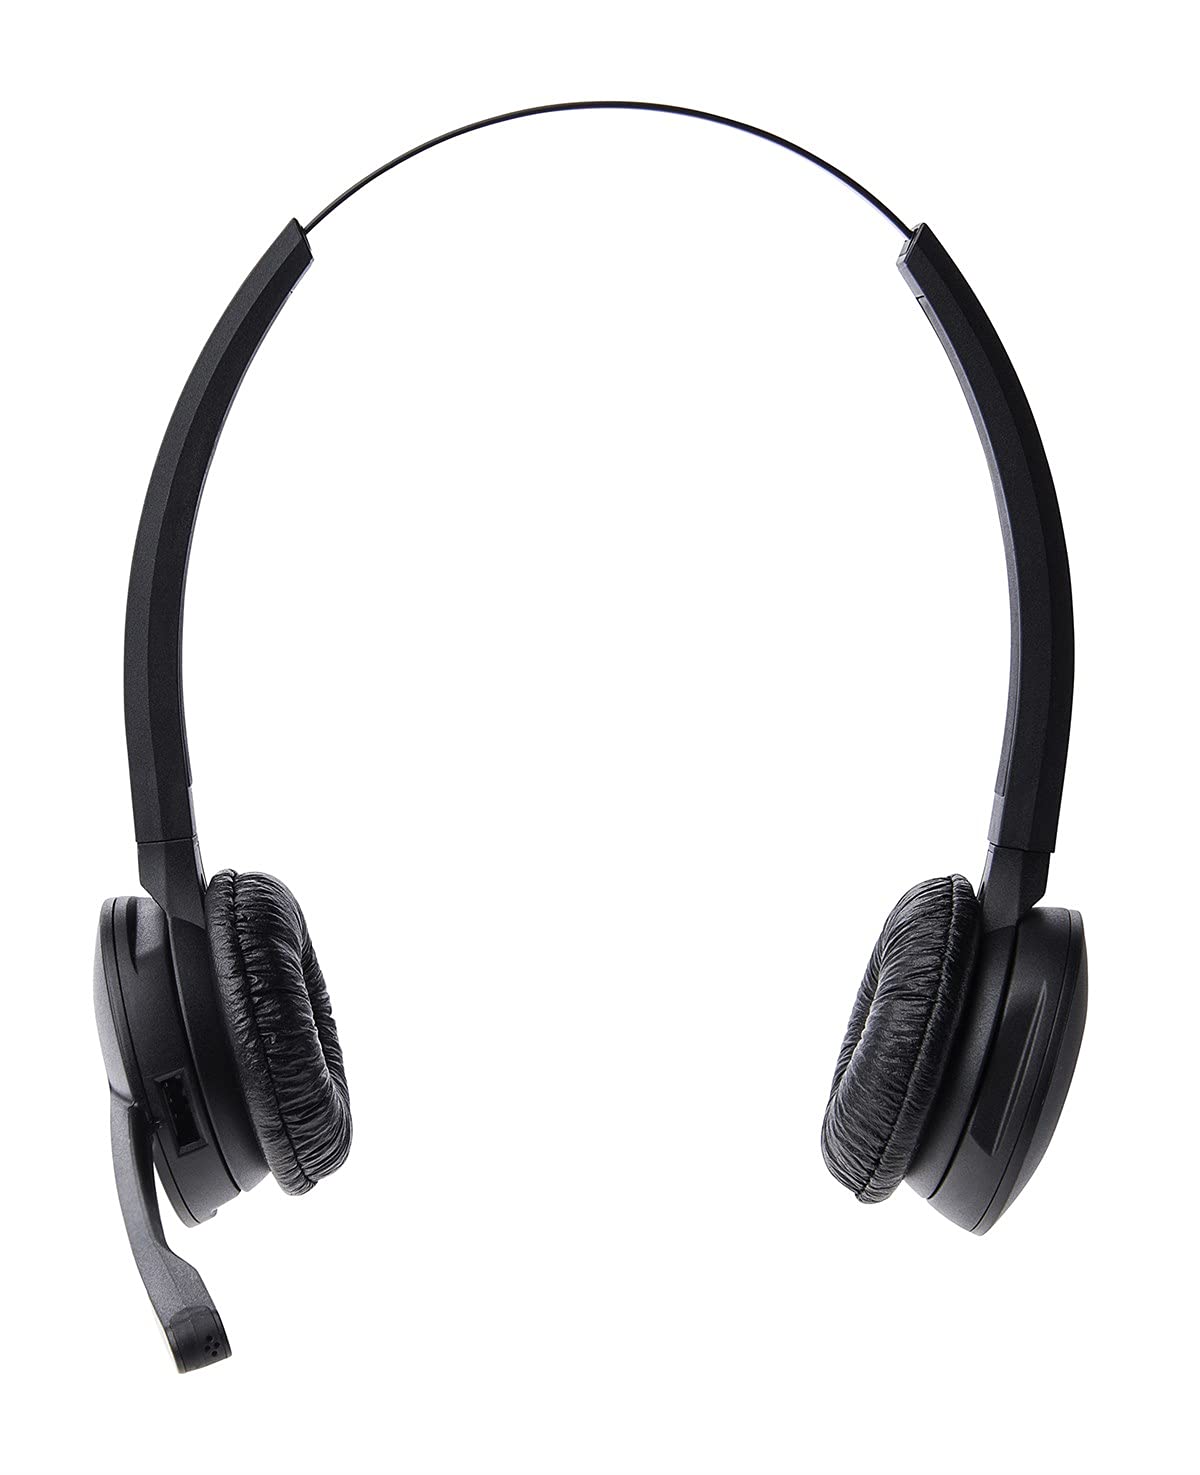 Jabra Pro 920 DECT Kabelloses On-Ear Stereo Headset - HD Voice und Noise Cancelling - ganztägige Akkulaufzeit - zur Verwendung mit Tischtelefonen in Europa - EU-Stecker, schwarz